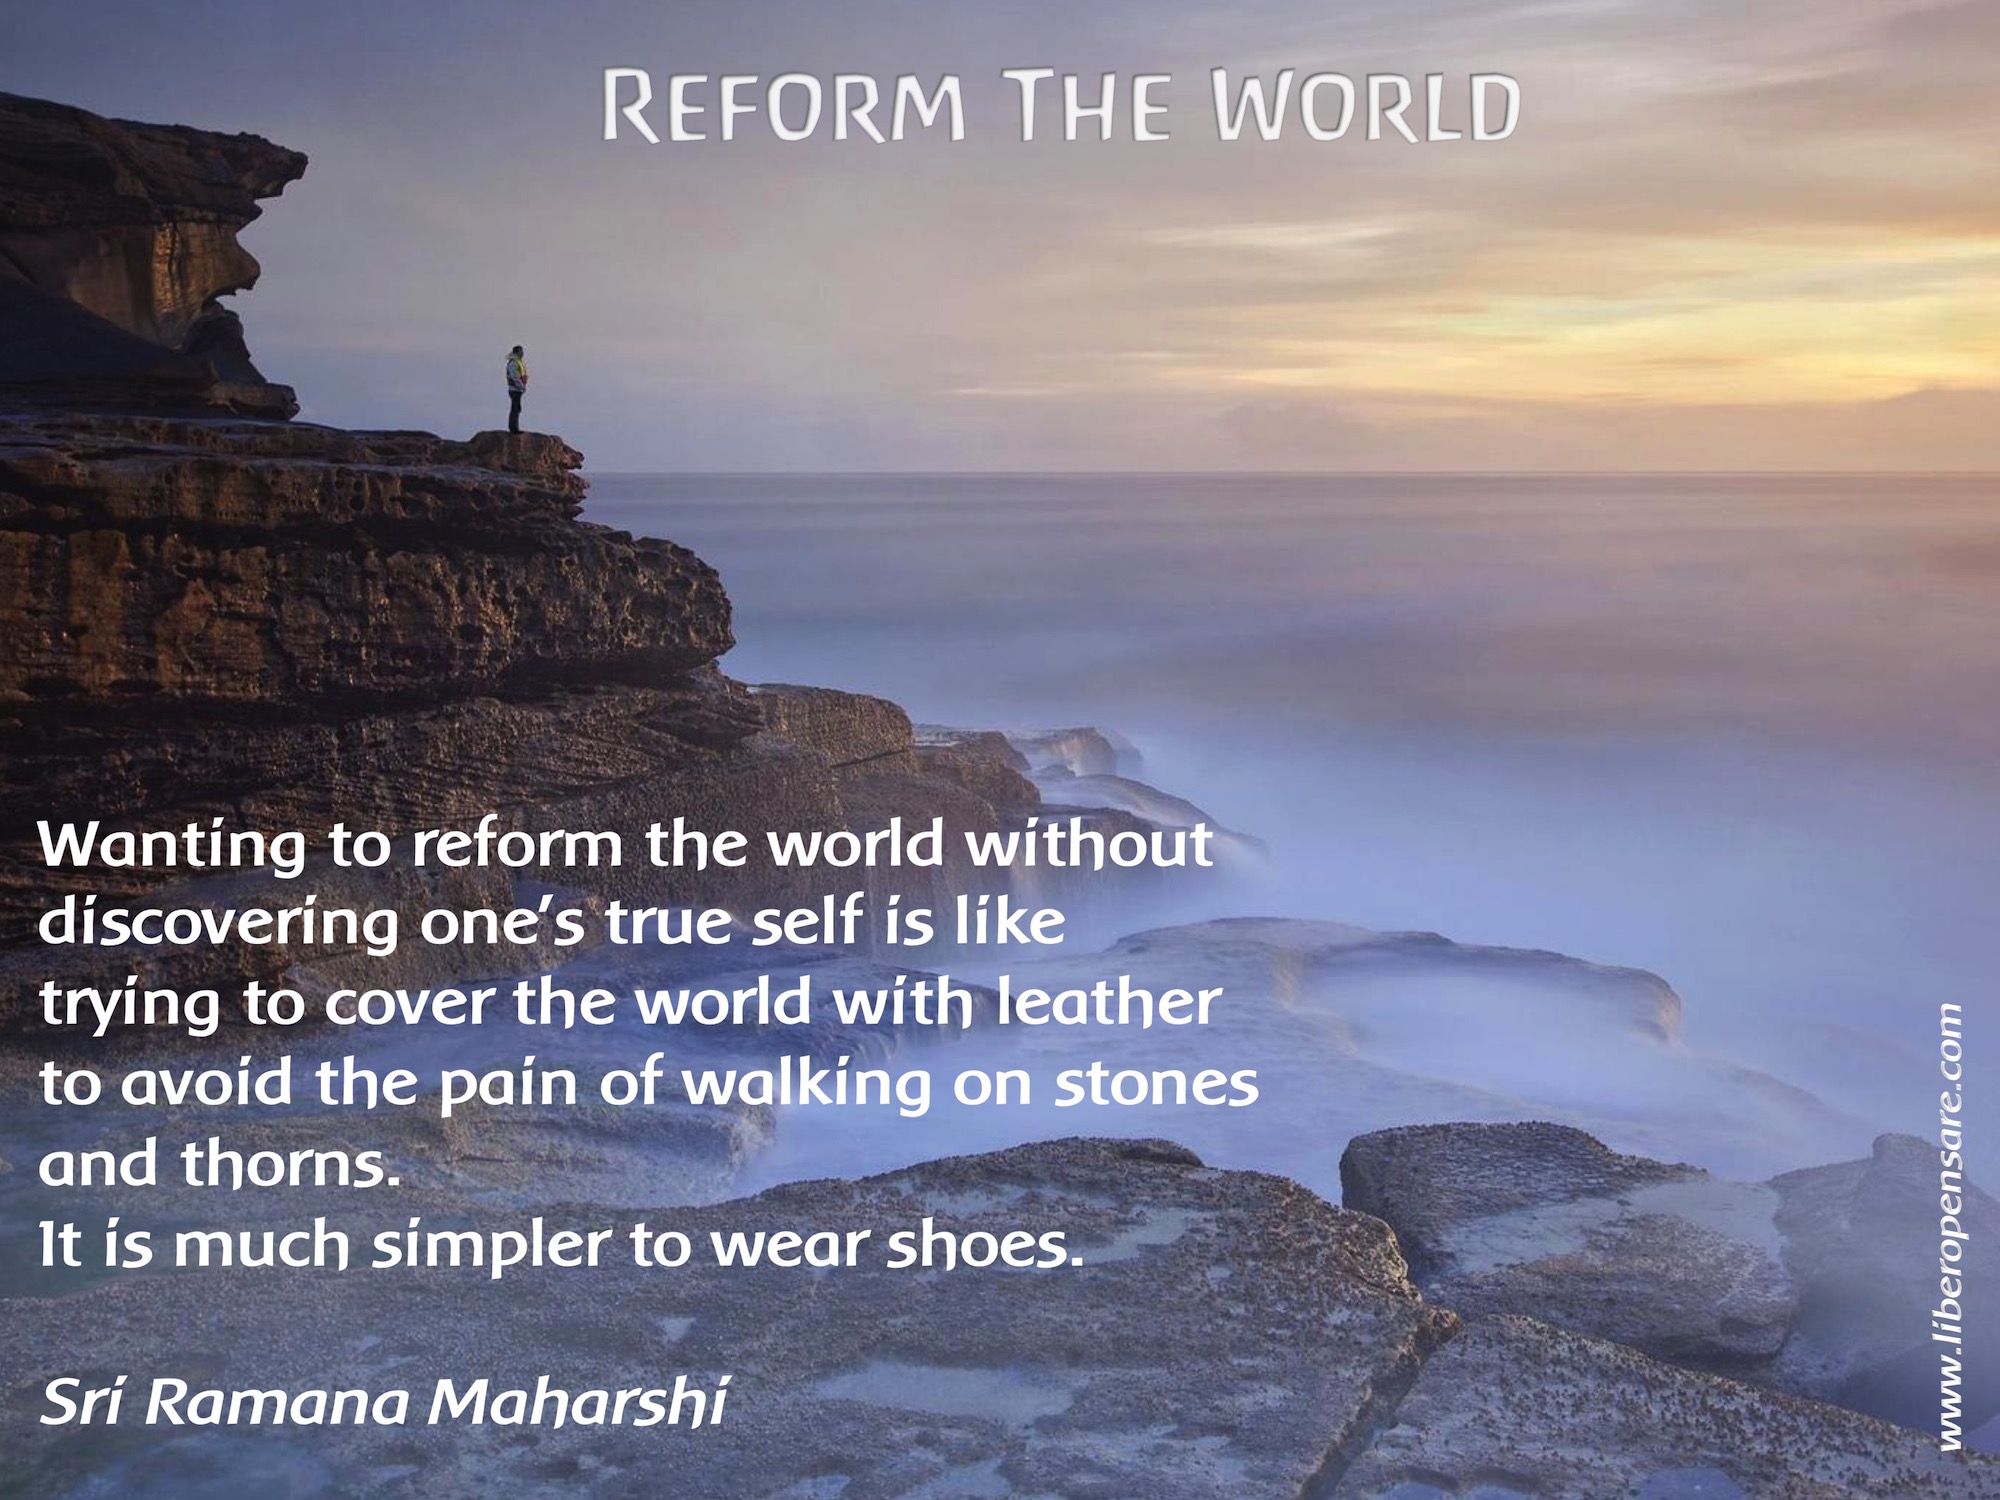 Reform the World Sri Ramana Maharshi